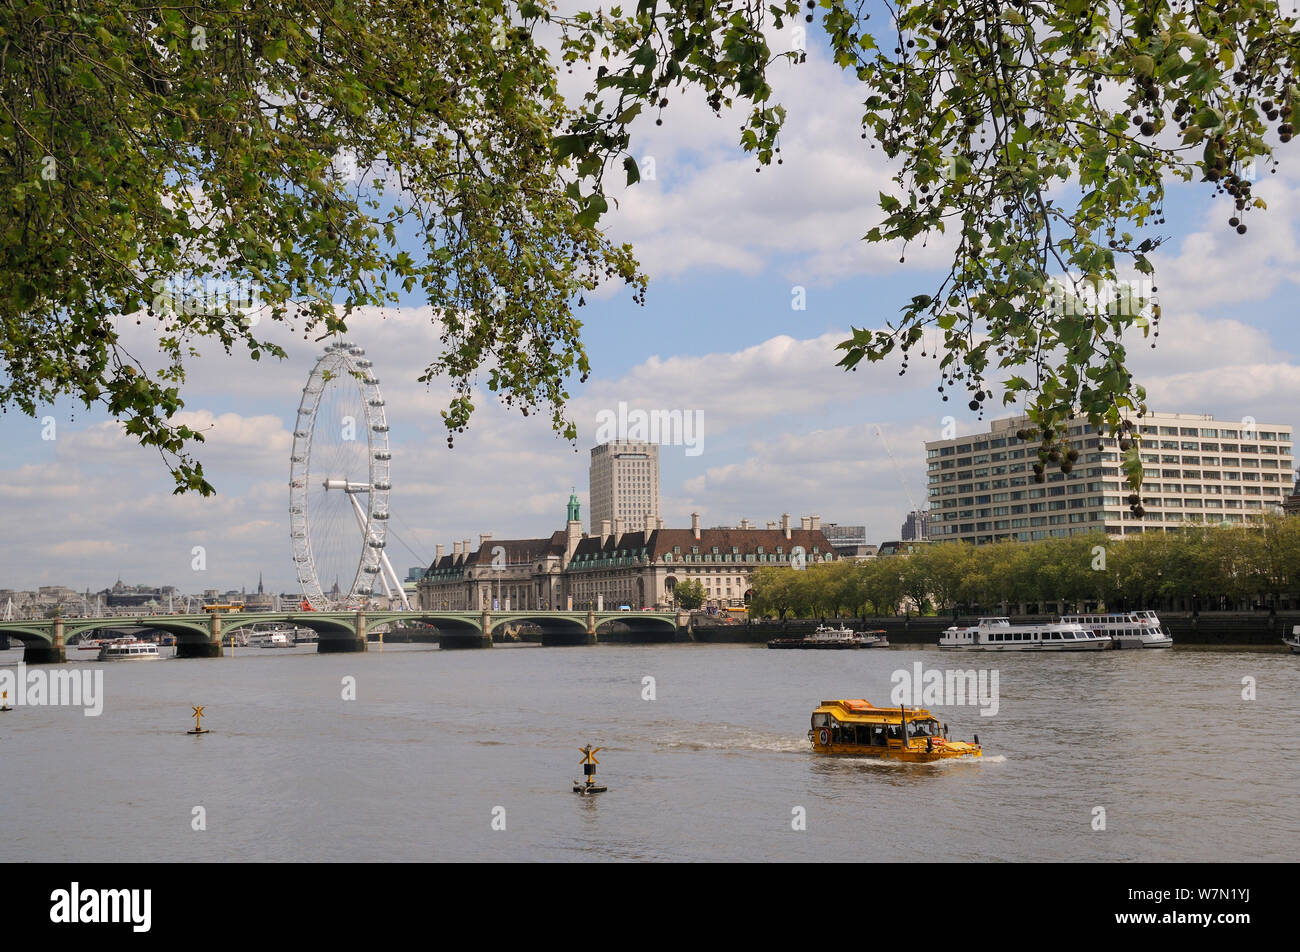 Londra platani (Platanus x hispanica) a strapiombo sul fiume Tamigi con la London Eye, Westminster Bridge e County Hall in background, Londra, Regno Unito, maggio. 2012 Foto Stock